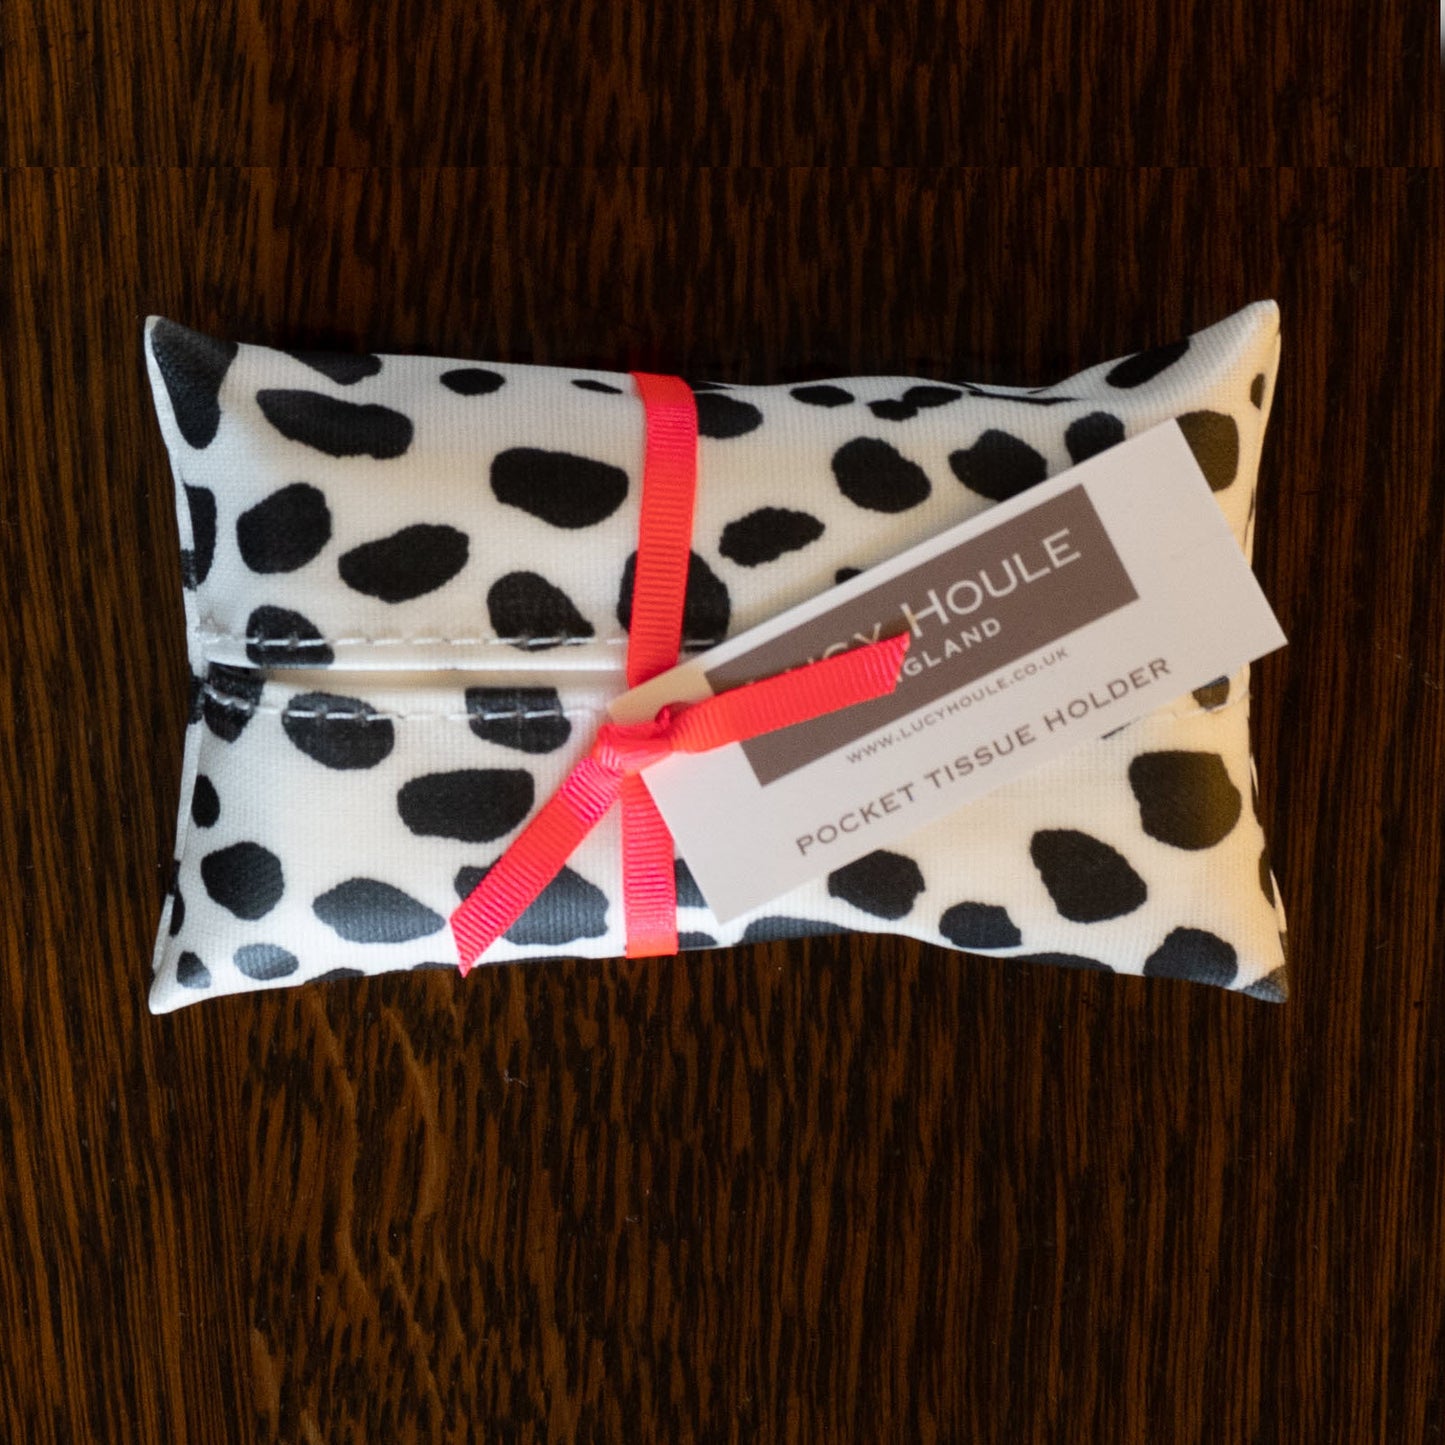 Dalmatian Pocket Tissue Holder